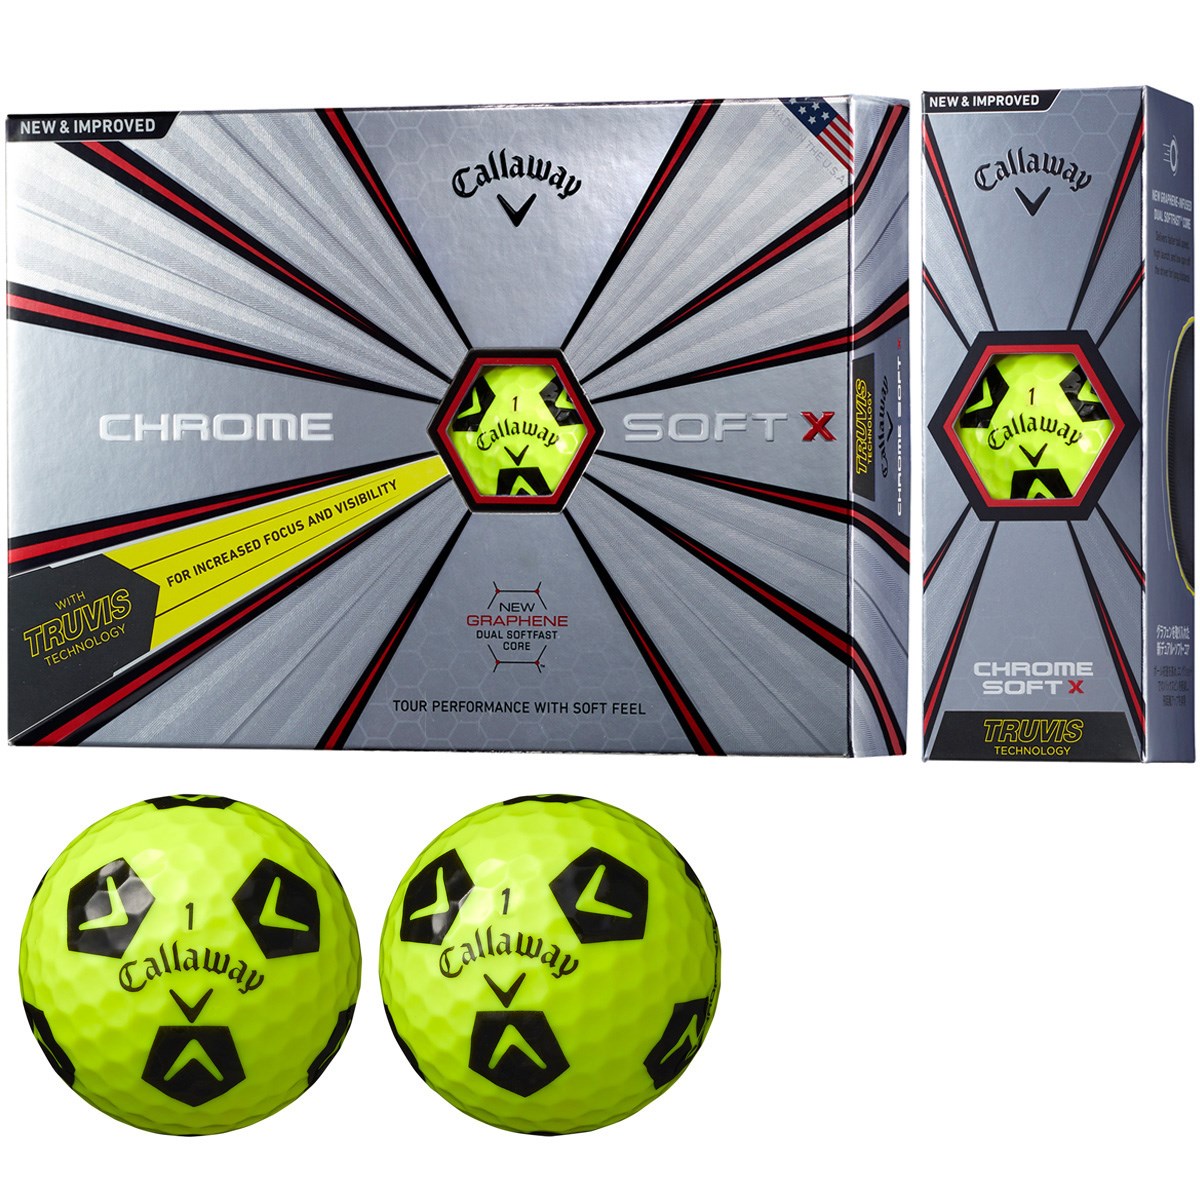 Dショッピング キャロウェイゴルフ Chrom Soft Chrome Soft X Truvis ボール 3ダースセット 3ダース 36個入り ホワイト ブルー カテゴリ ゴルフボールの販売できる商品 Gdoゴルフショップ ドコモの通販サイト